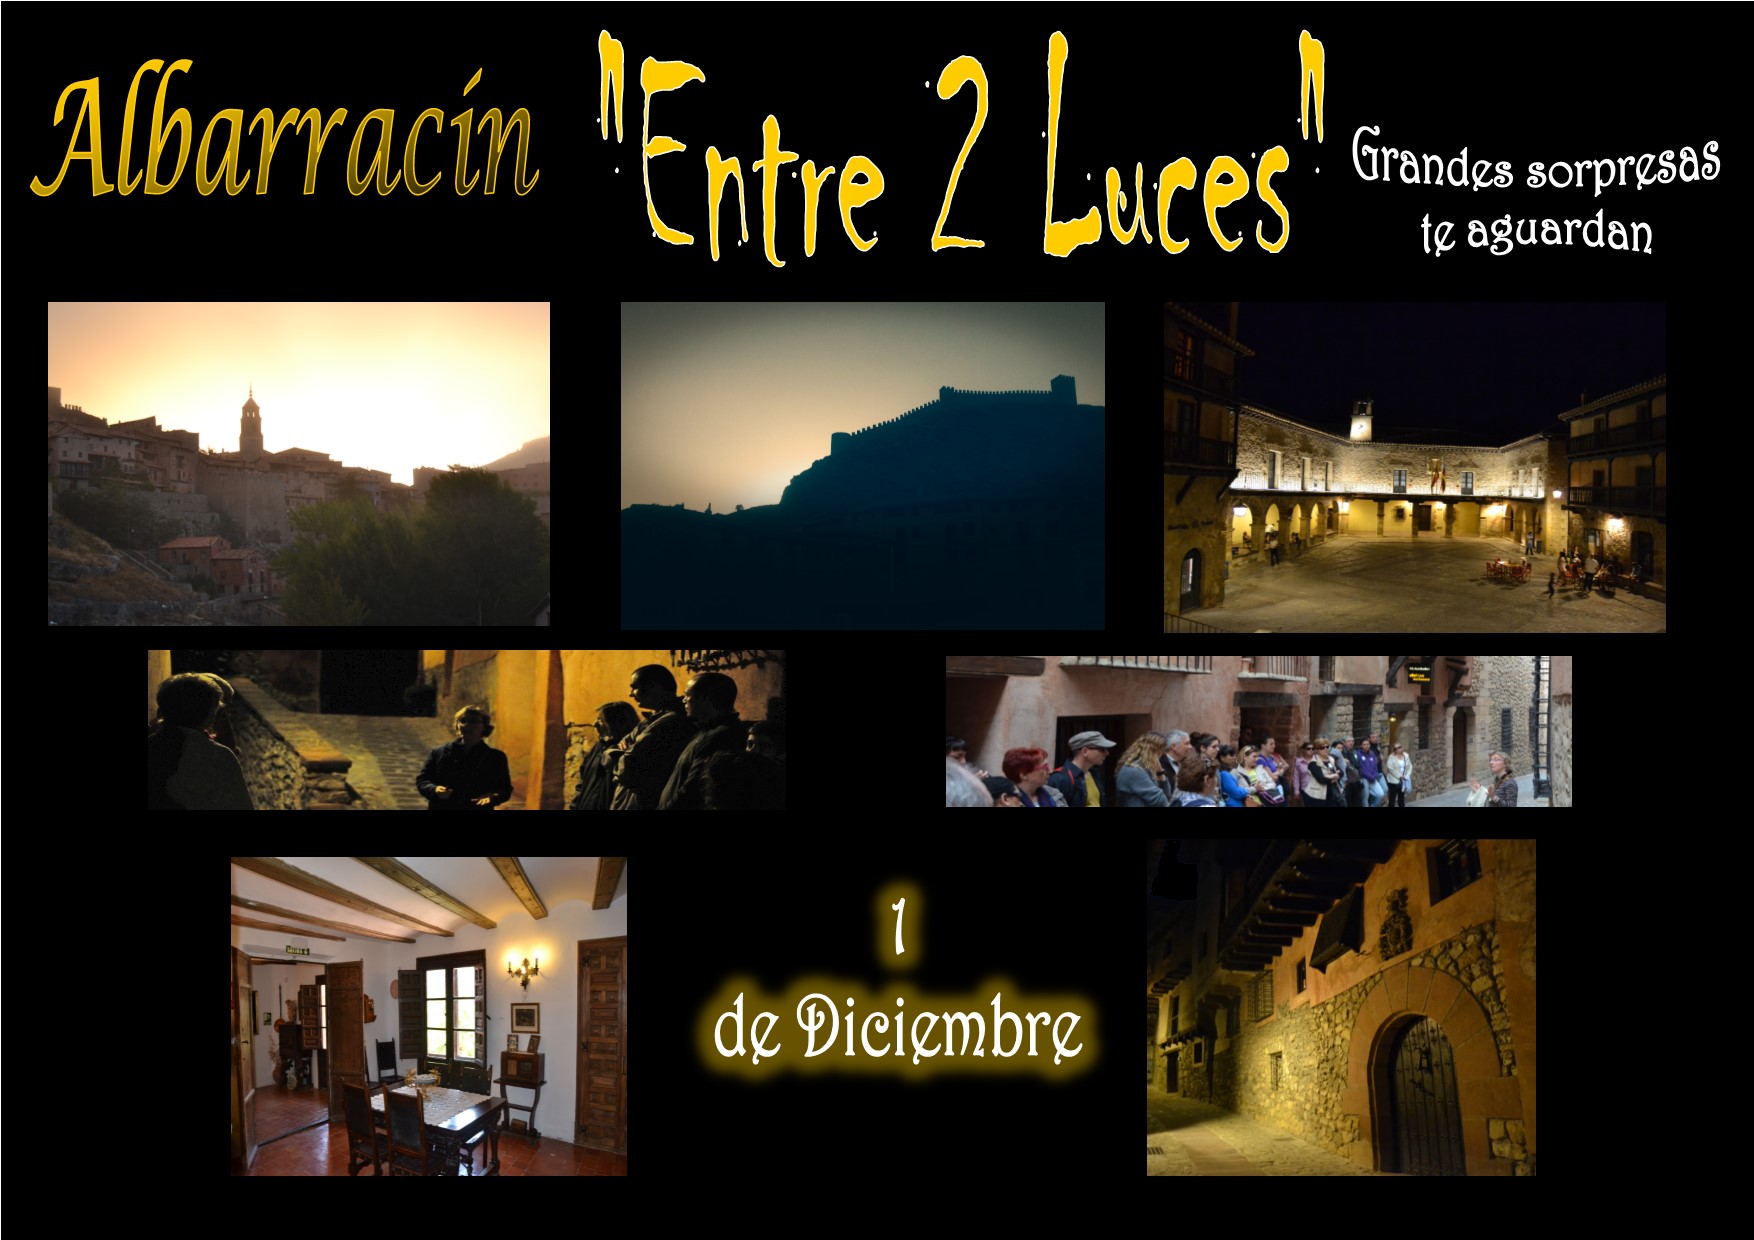 Este Sábado 1 de Diciembre…Albarracín «Entre 2 Luces» y con sorpresas!!!